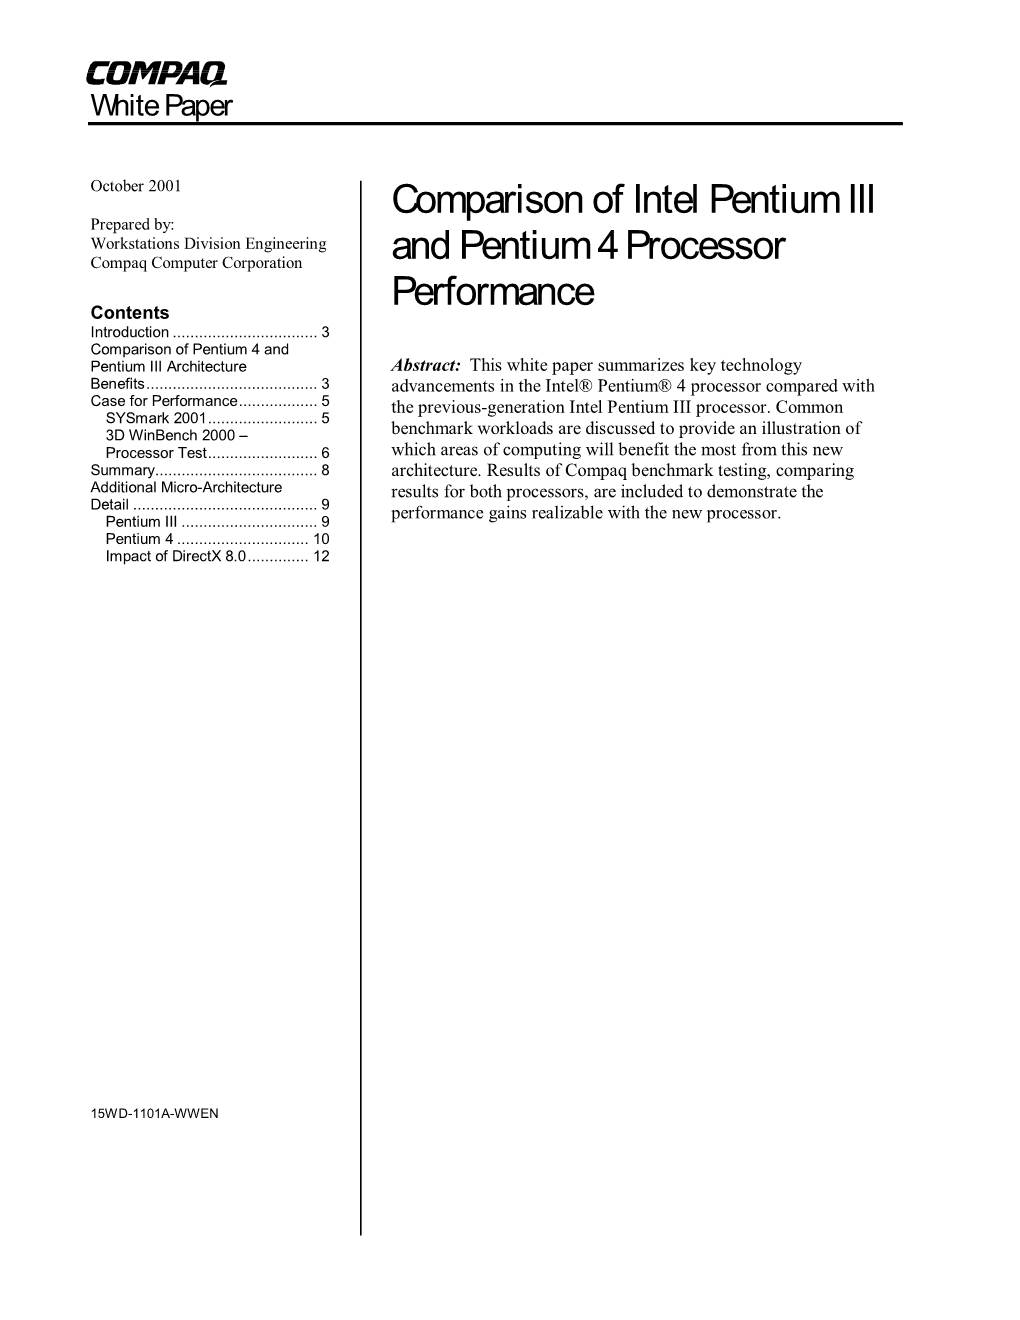 Comparison of Intel Pentium III and Pentium 4 Processor Performance White Paper 2